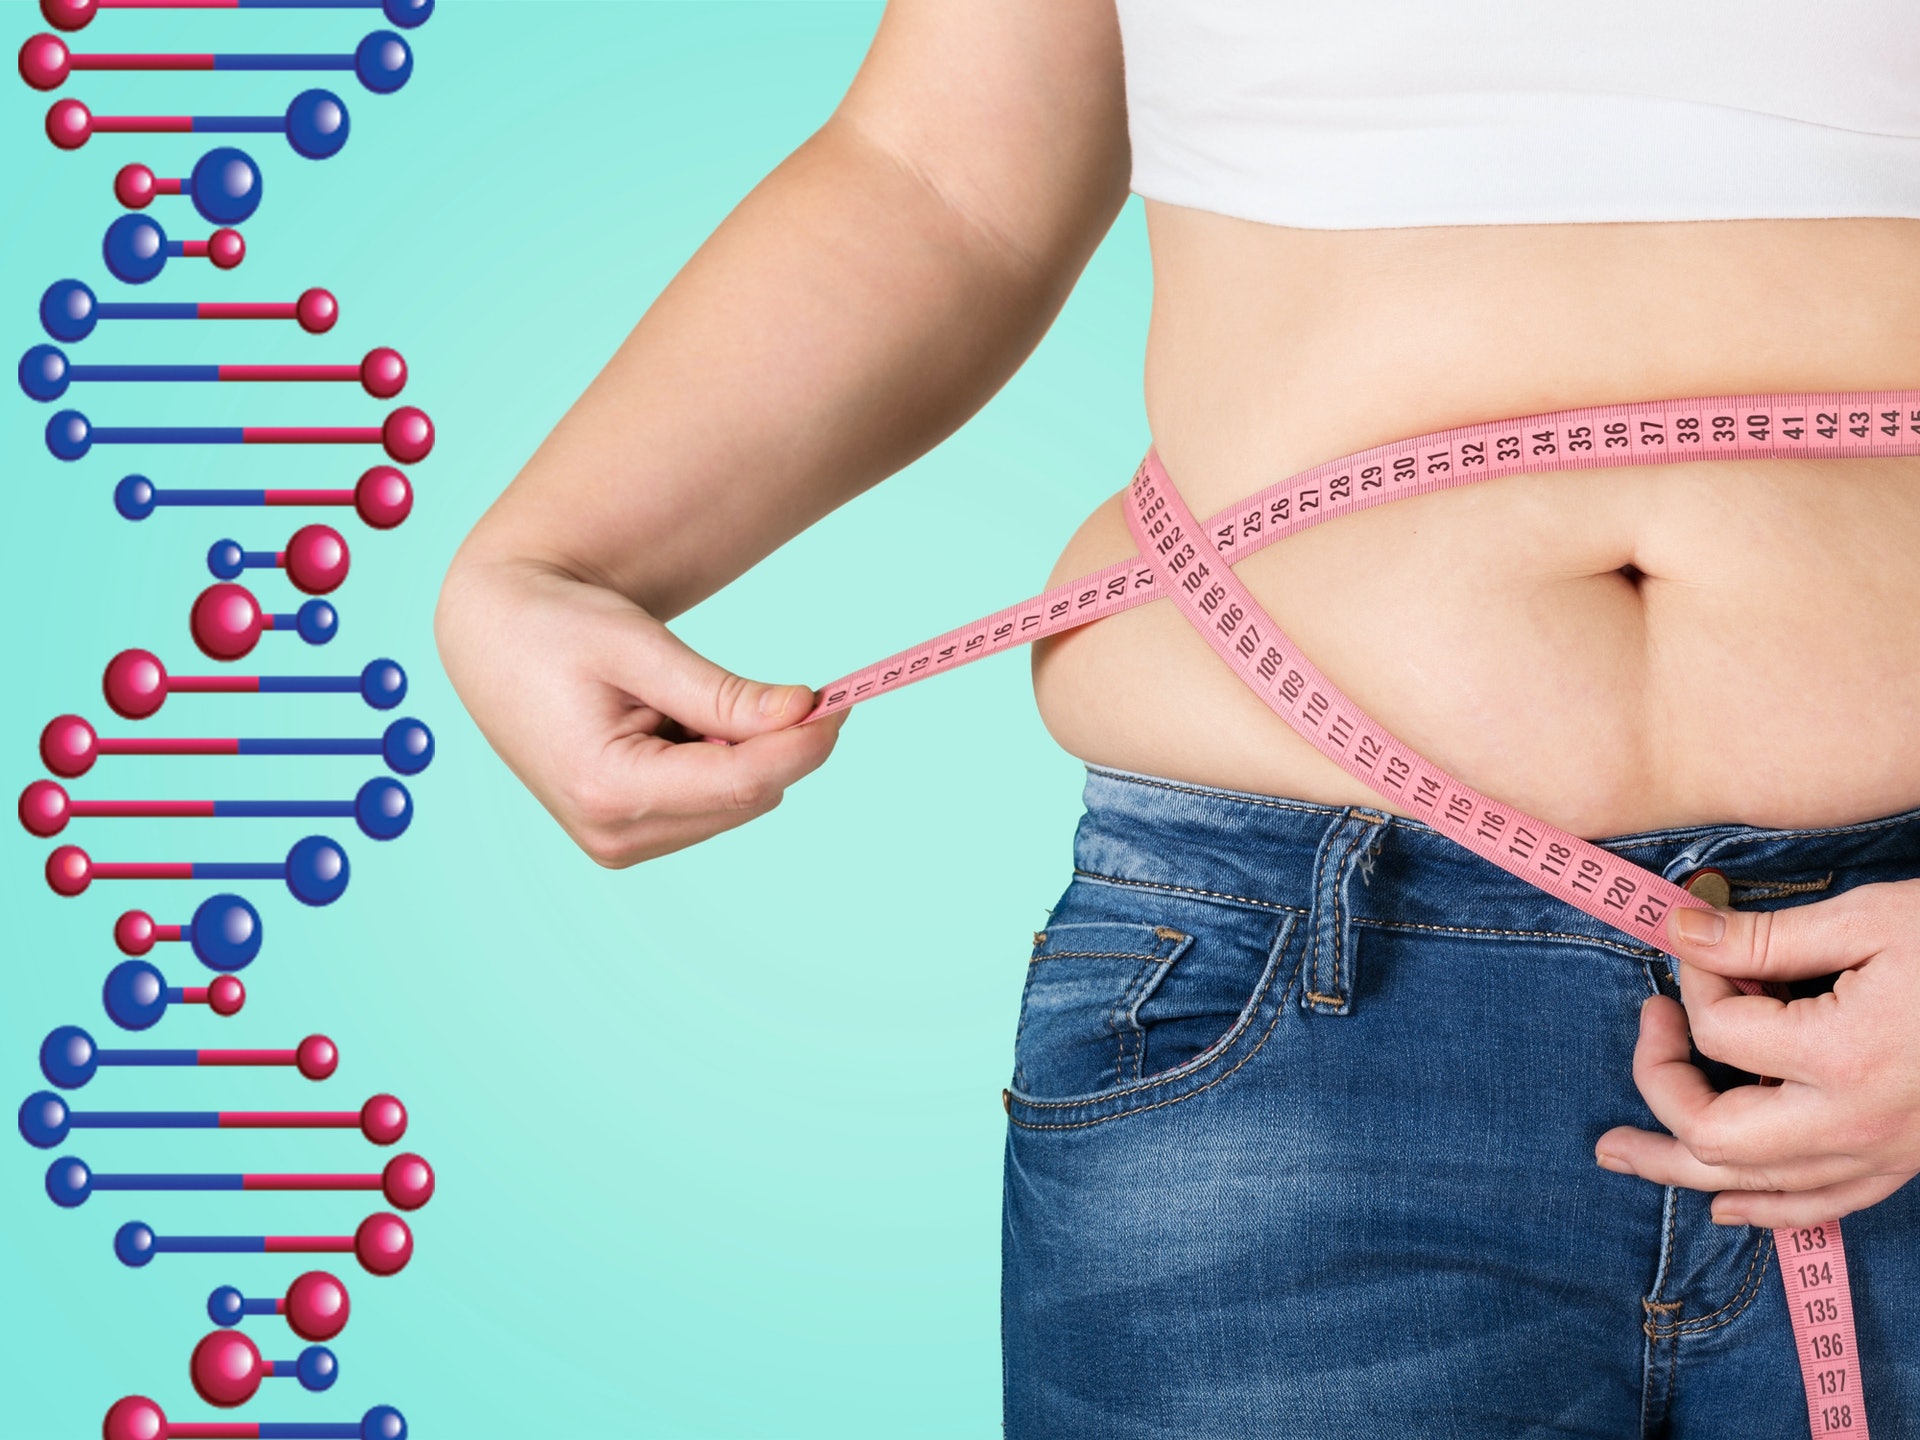 「DNA 肥胖基因測試」對個人體質作出深入分析，有助了解自己是否屬於脂肪容易積聚的體質、對甚麼食物特別容易吸收、做哪類型的運動能最快消耗脂肪等資訊。（圖片：easyhealthoptions）